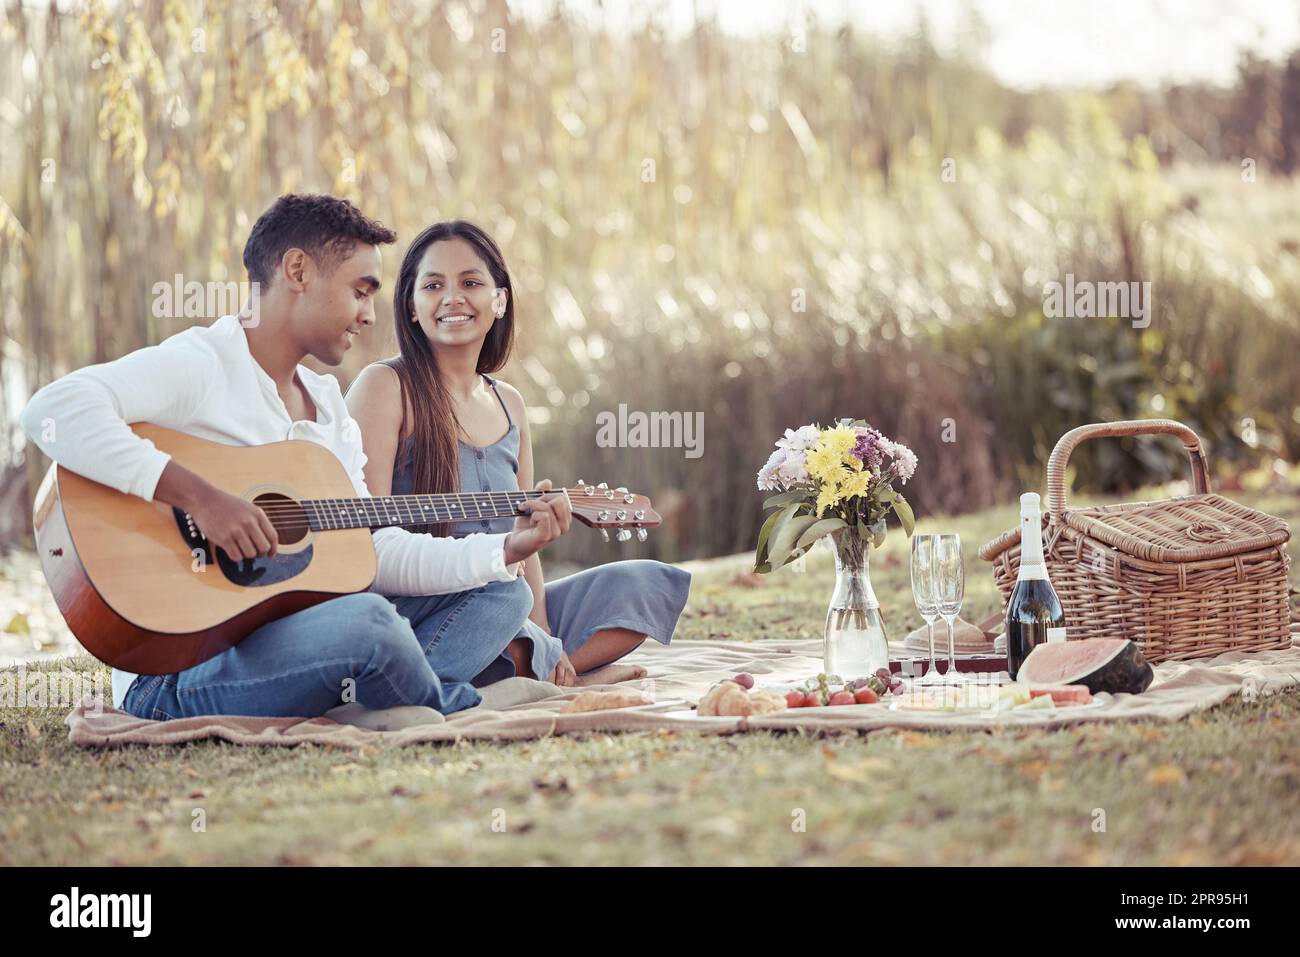 Meine Liebe durch Musik teilen. In voller Länge eine junge Frau, die mit ihrem Freund sitzt, während er während ihres Picknickdatums Gitarre spielt. Stockfoto